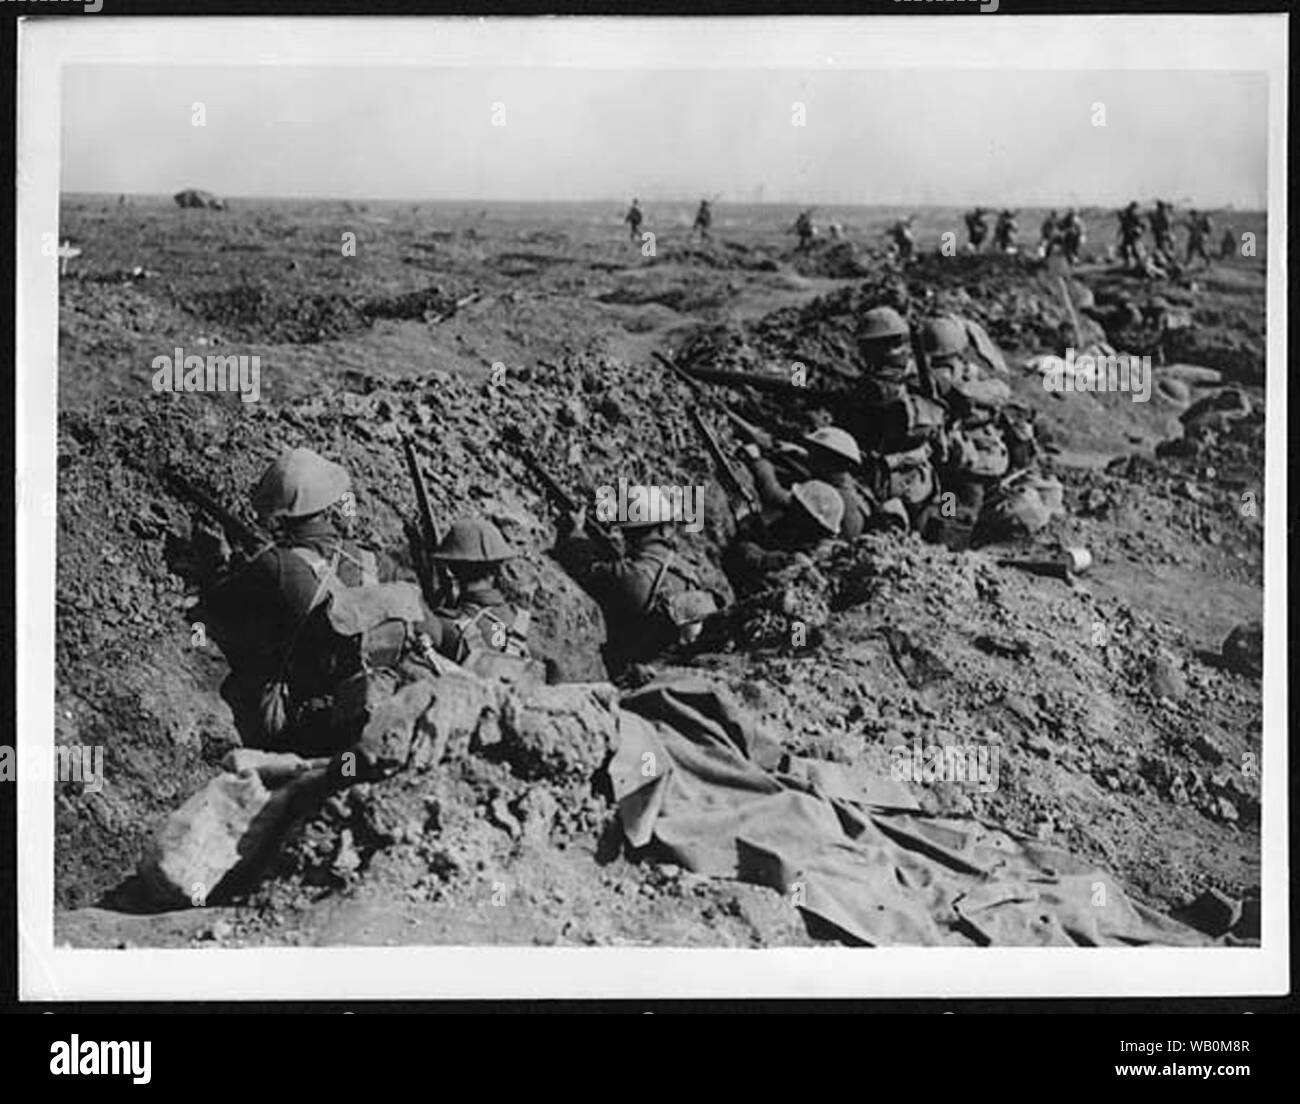 En attente d'infanterie dans une tranchée pour leur tour à l'avance, tandis que d'autres à droite sont déjà en marche. Il y a un réservoir dans l'arrière-plan sur l'infanterie, de sorte que l'image doit avoir été prises après le 15 septembre 1916, la première fois que les chars ont été utilisés dans la bataille. Elle date probablement d'après l'offensive de Cambrai, 1917 lorsqu'ils ont été utilisés avec plus de succès. Haig avait initialement été enthousiasmés par les chars, mais il a été forcé de les utiliser trop tôt en 1916, avec des résultats désastreux. En 1917, la tactique avait été pratiqué, avec les réservoirs utilisés à titre d'avance de briser l'ennemi" Banque D'Images